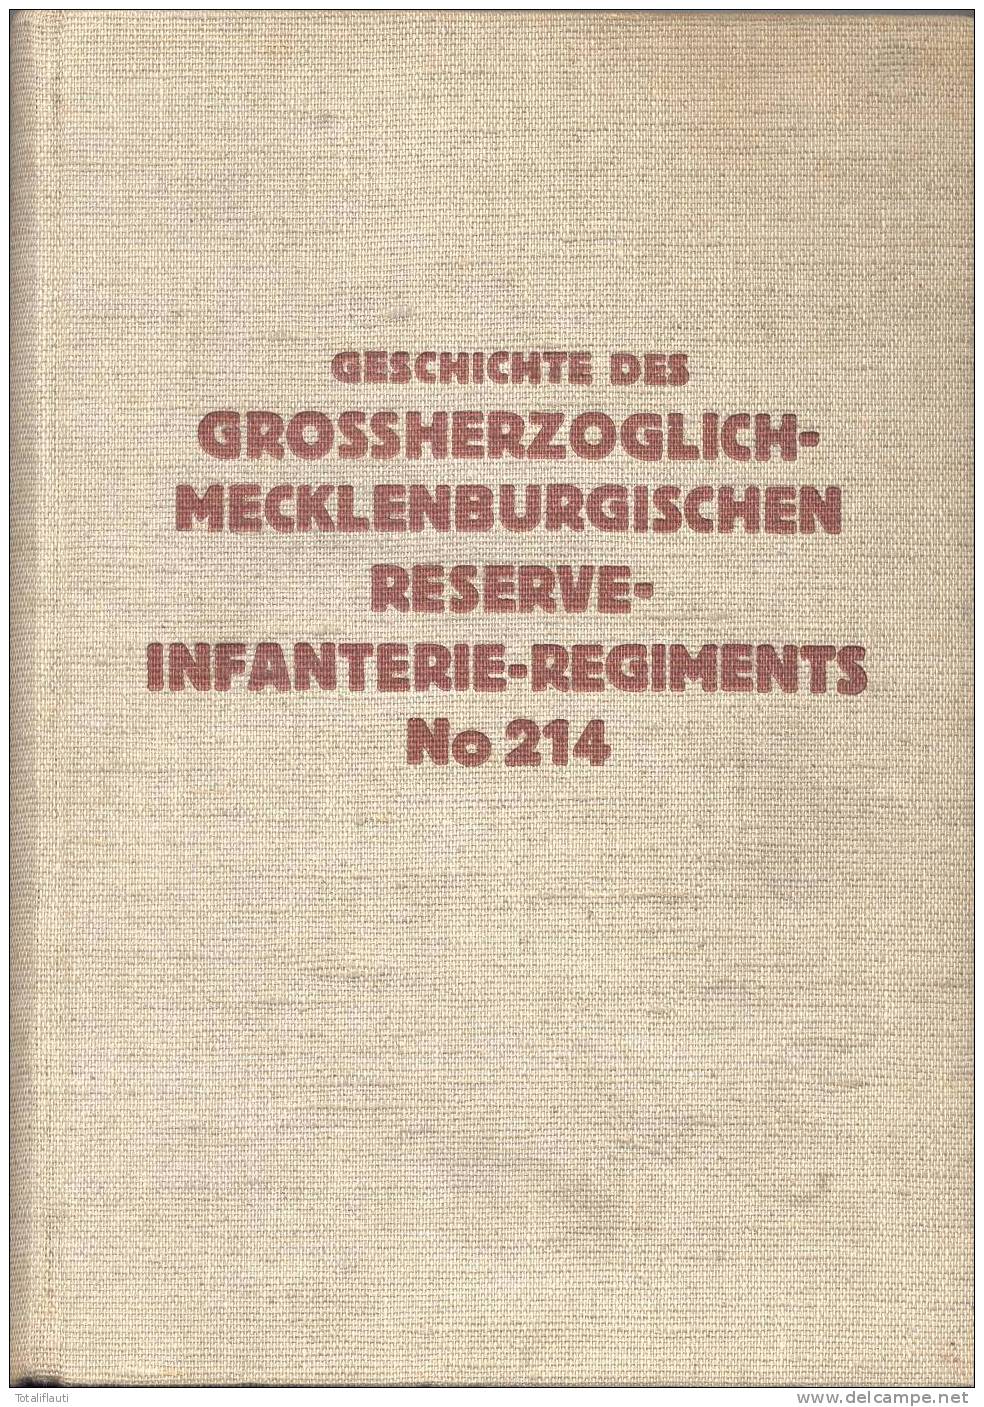 Wytschaete Bogen Grab Oberstleutnant Schröder Gefallen 4.11.1914 B Poesele Cimetiere Malane RIR 214 Original Fotokarte - Mesen